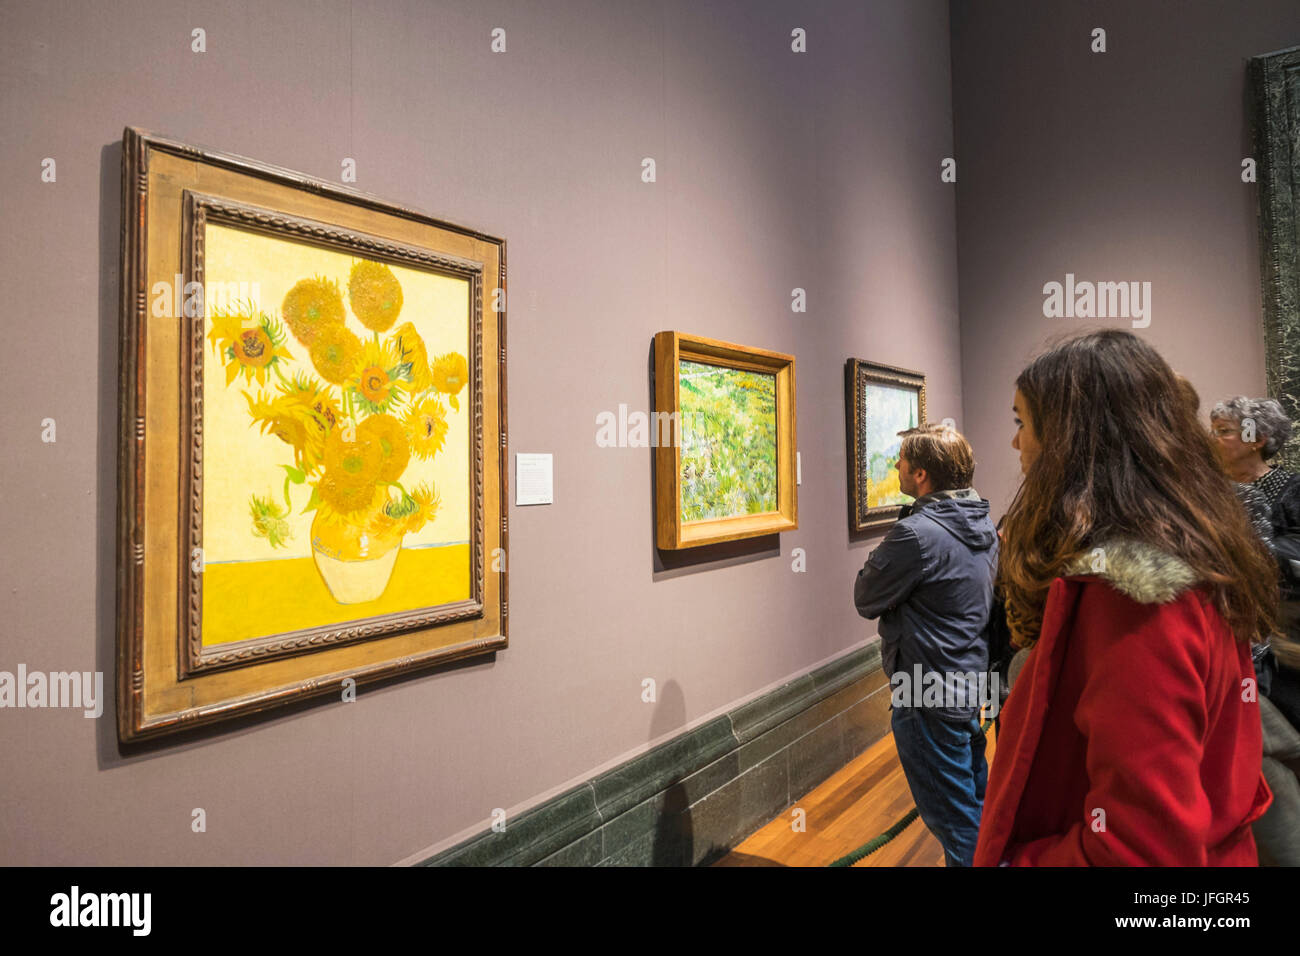 Inglaterra, Londres, Trafalgar Square, la National Gallery, los visitantes y los girasoles de Van Gogh pintura Foto de stock